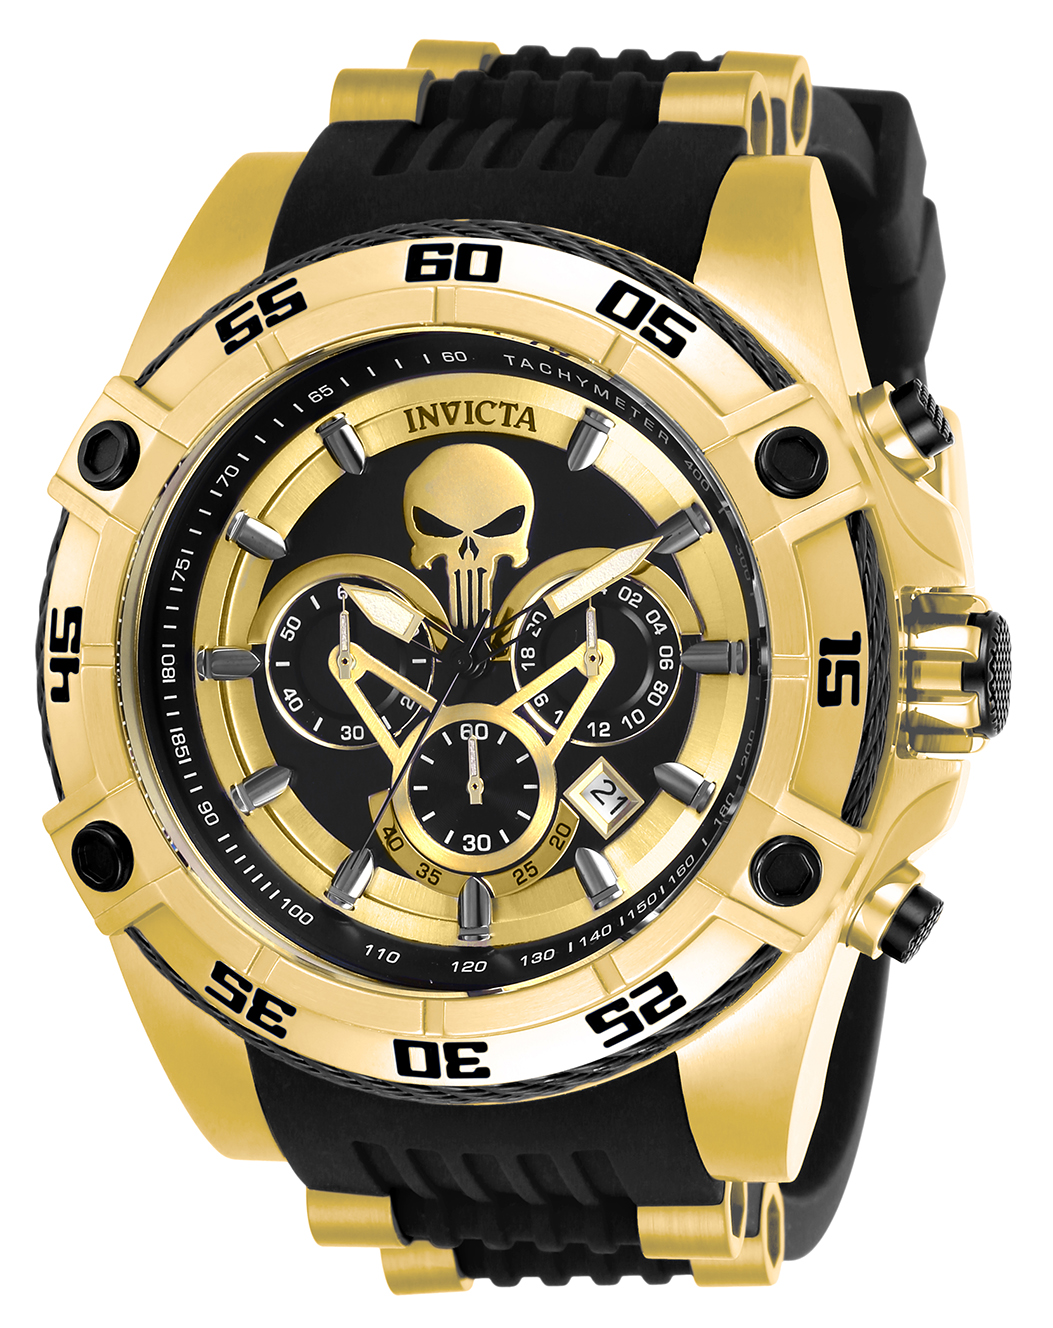 Invicta Marvel Punisher Men's Watch - 52mm, Gold, Black (26860)